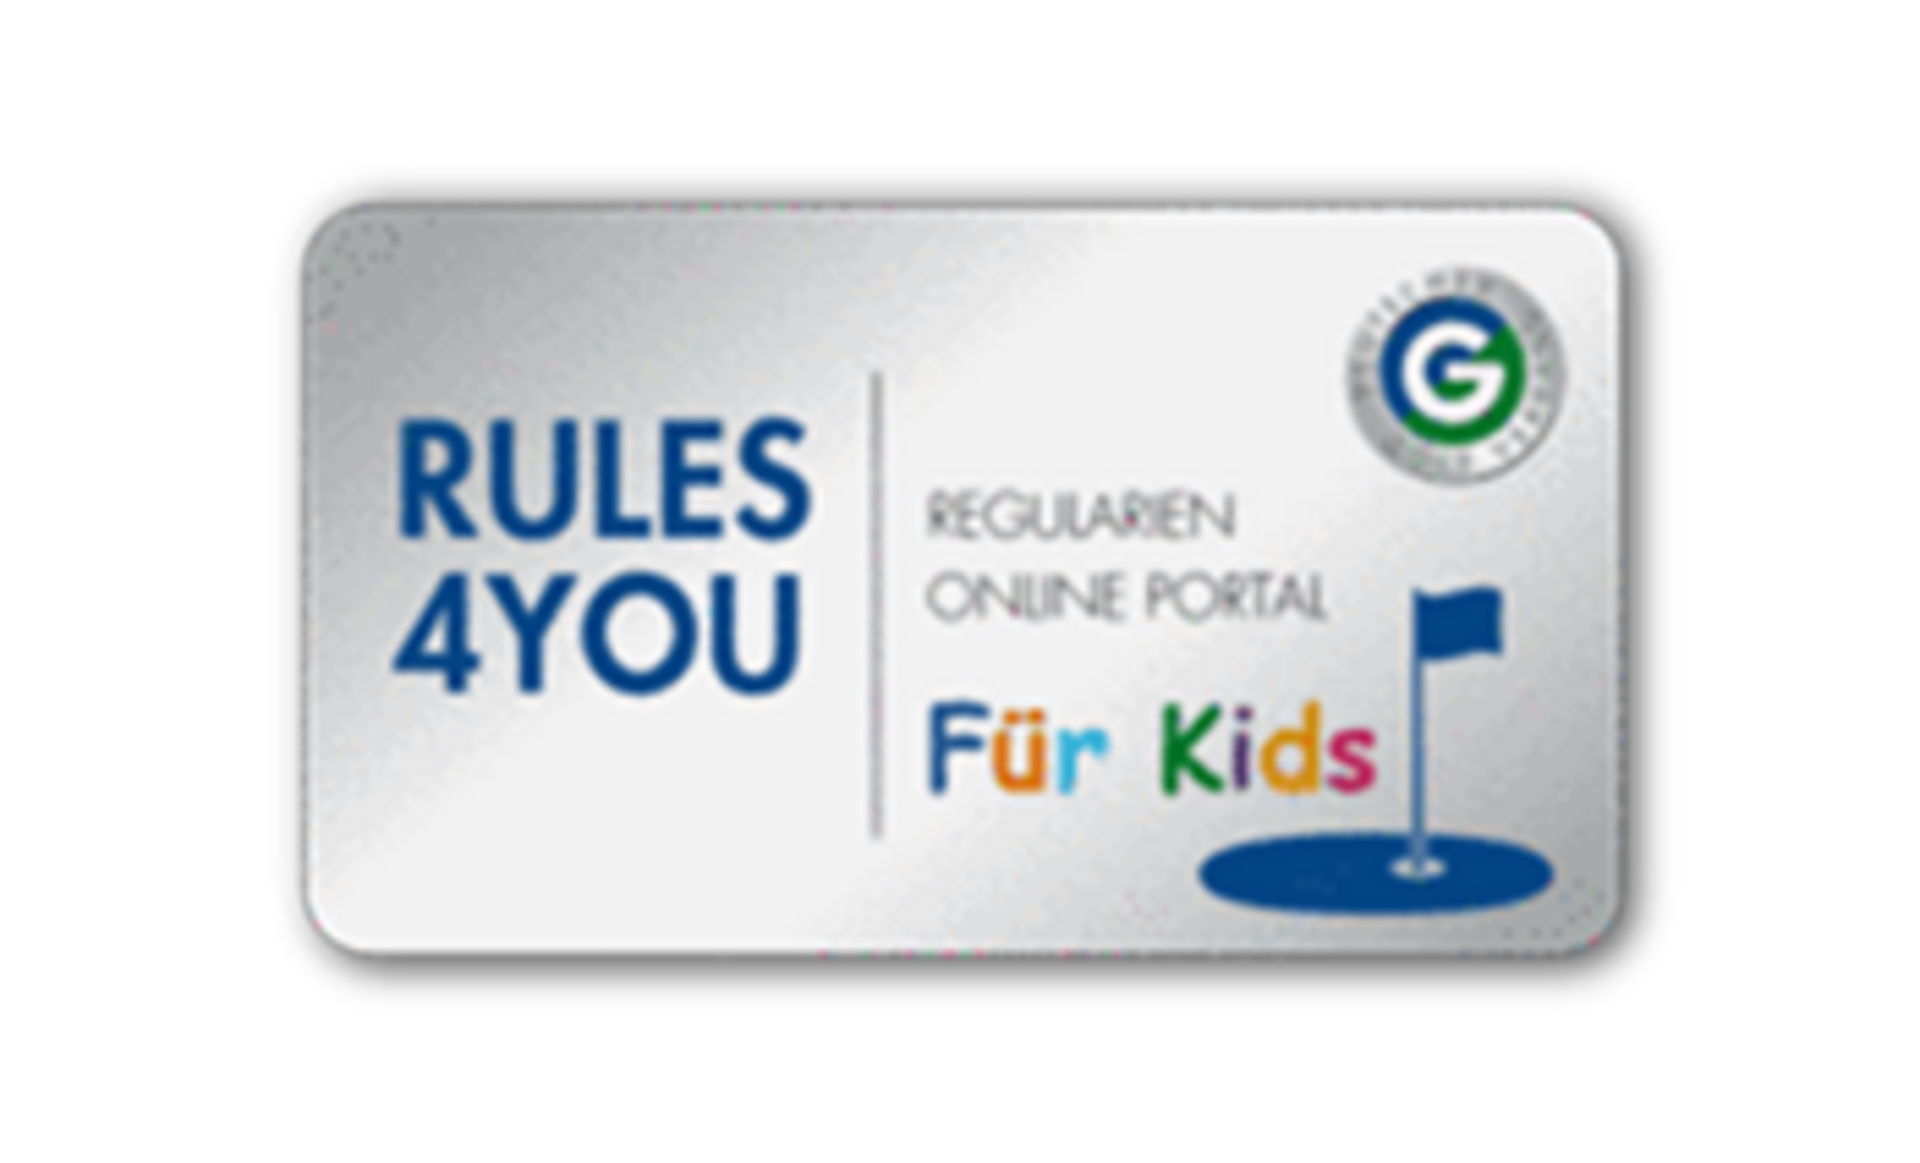 Emblem von RULES4YOU, dem Regularien-Online-Portal des Deutschen Golf Verbandes (DGV)